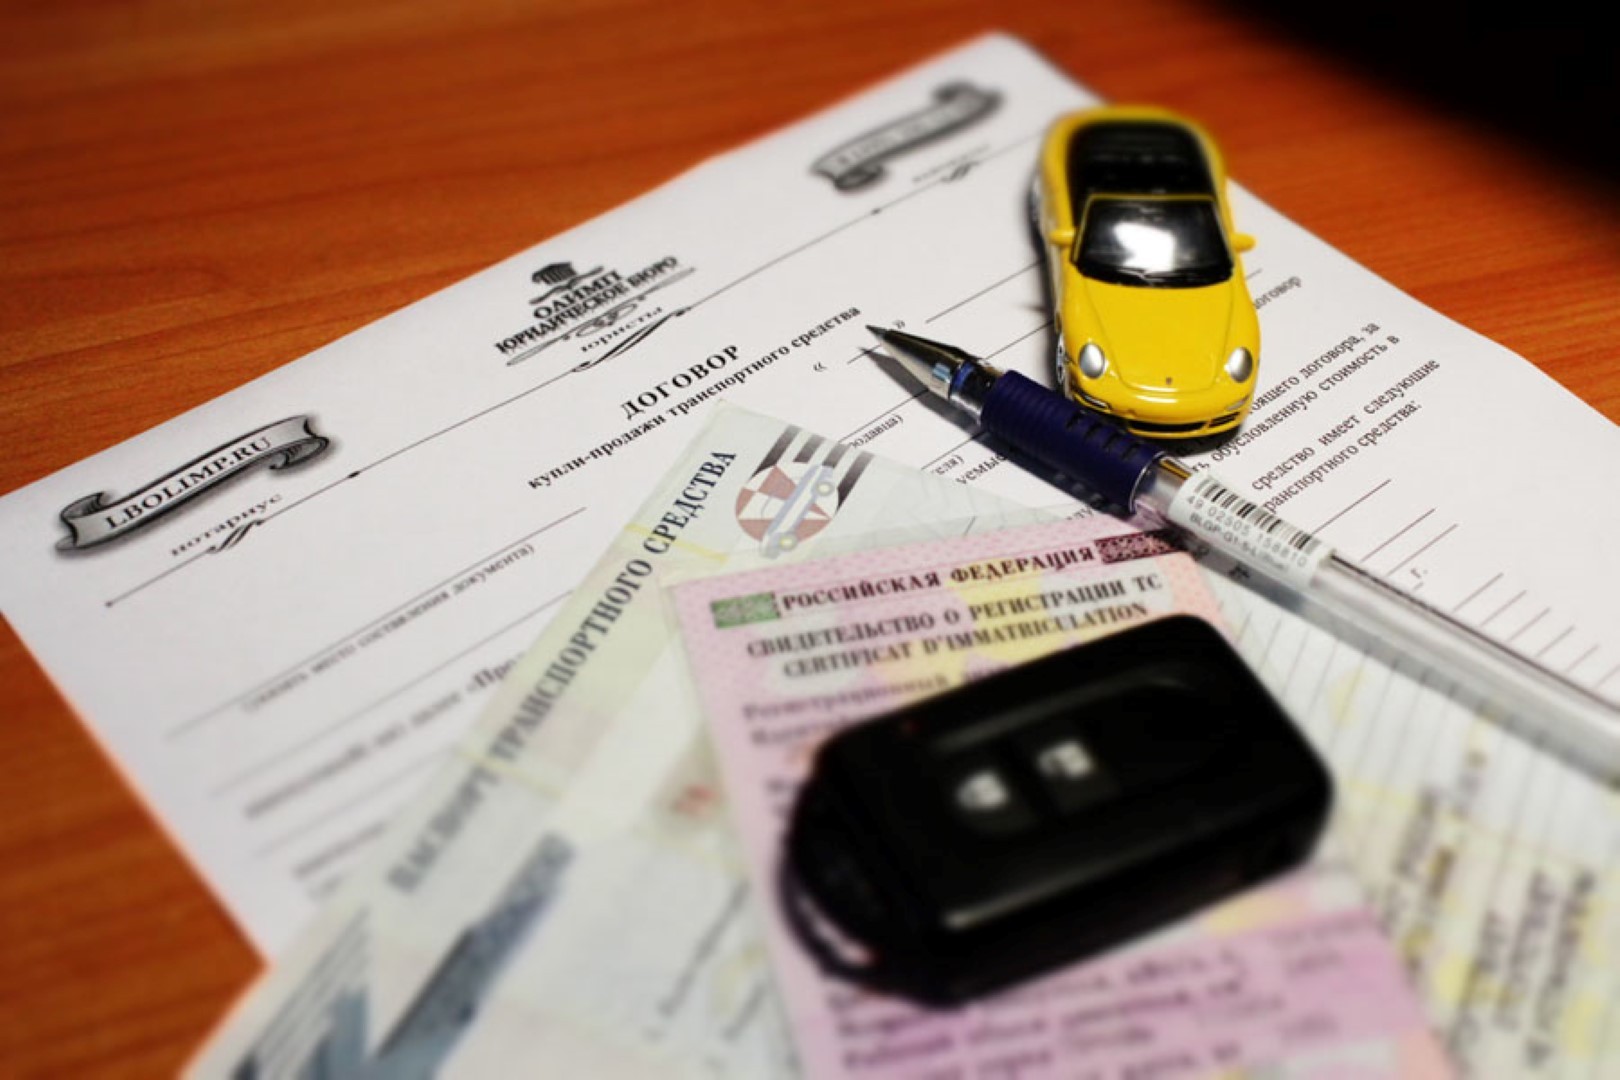 Какие документы необходимы при покупке автомобиля: подробное руководство для новичков и опытных водителей